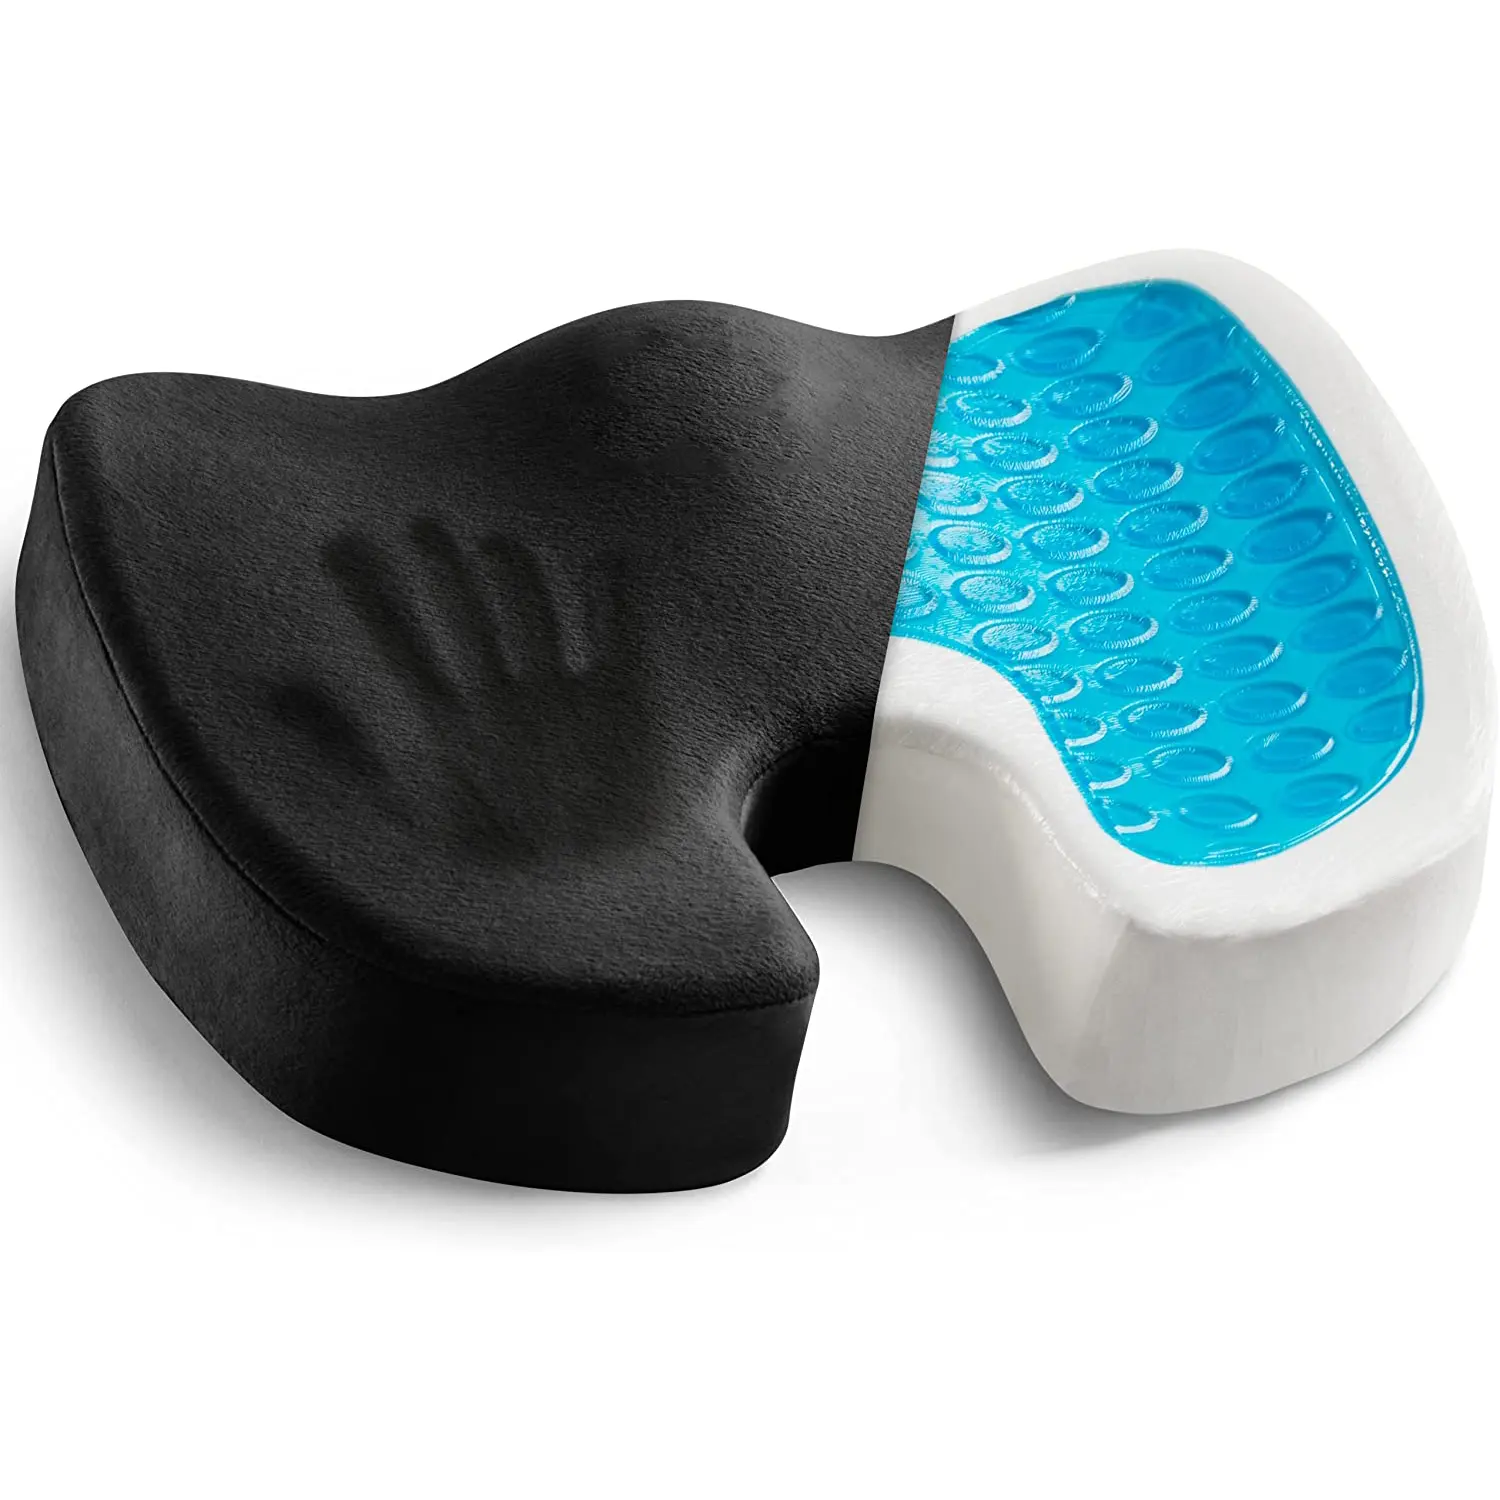 Non-Slip Orthopedic Gel Enhanced Seat Cushion Memory Foam Coccyx Cushion for Tailbone Pain - Office Chair Car Seat Cushion